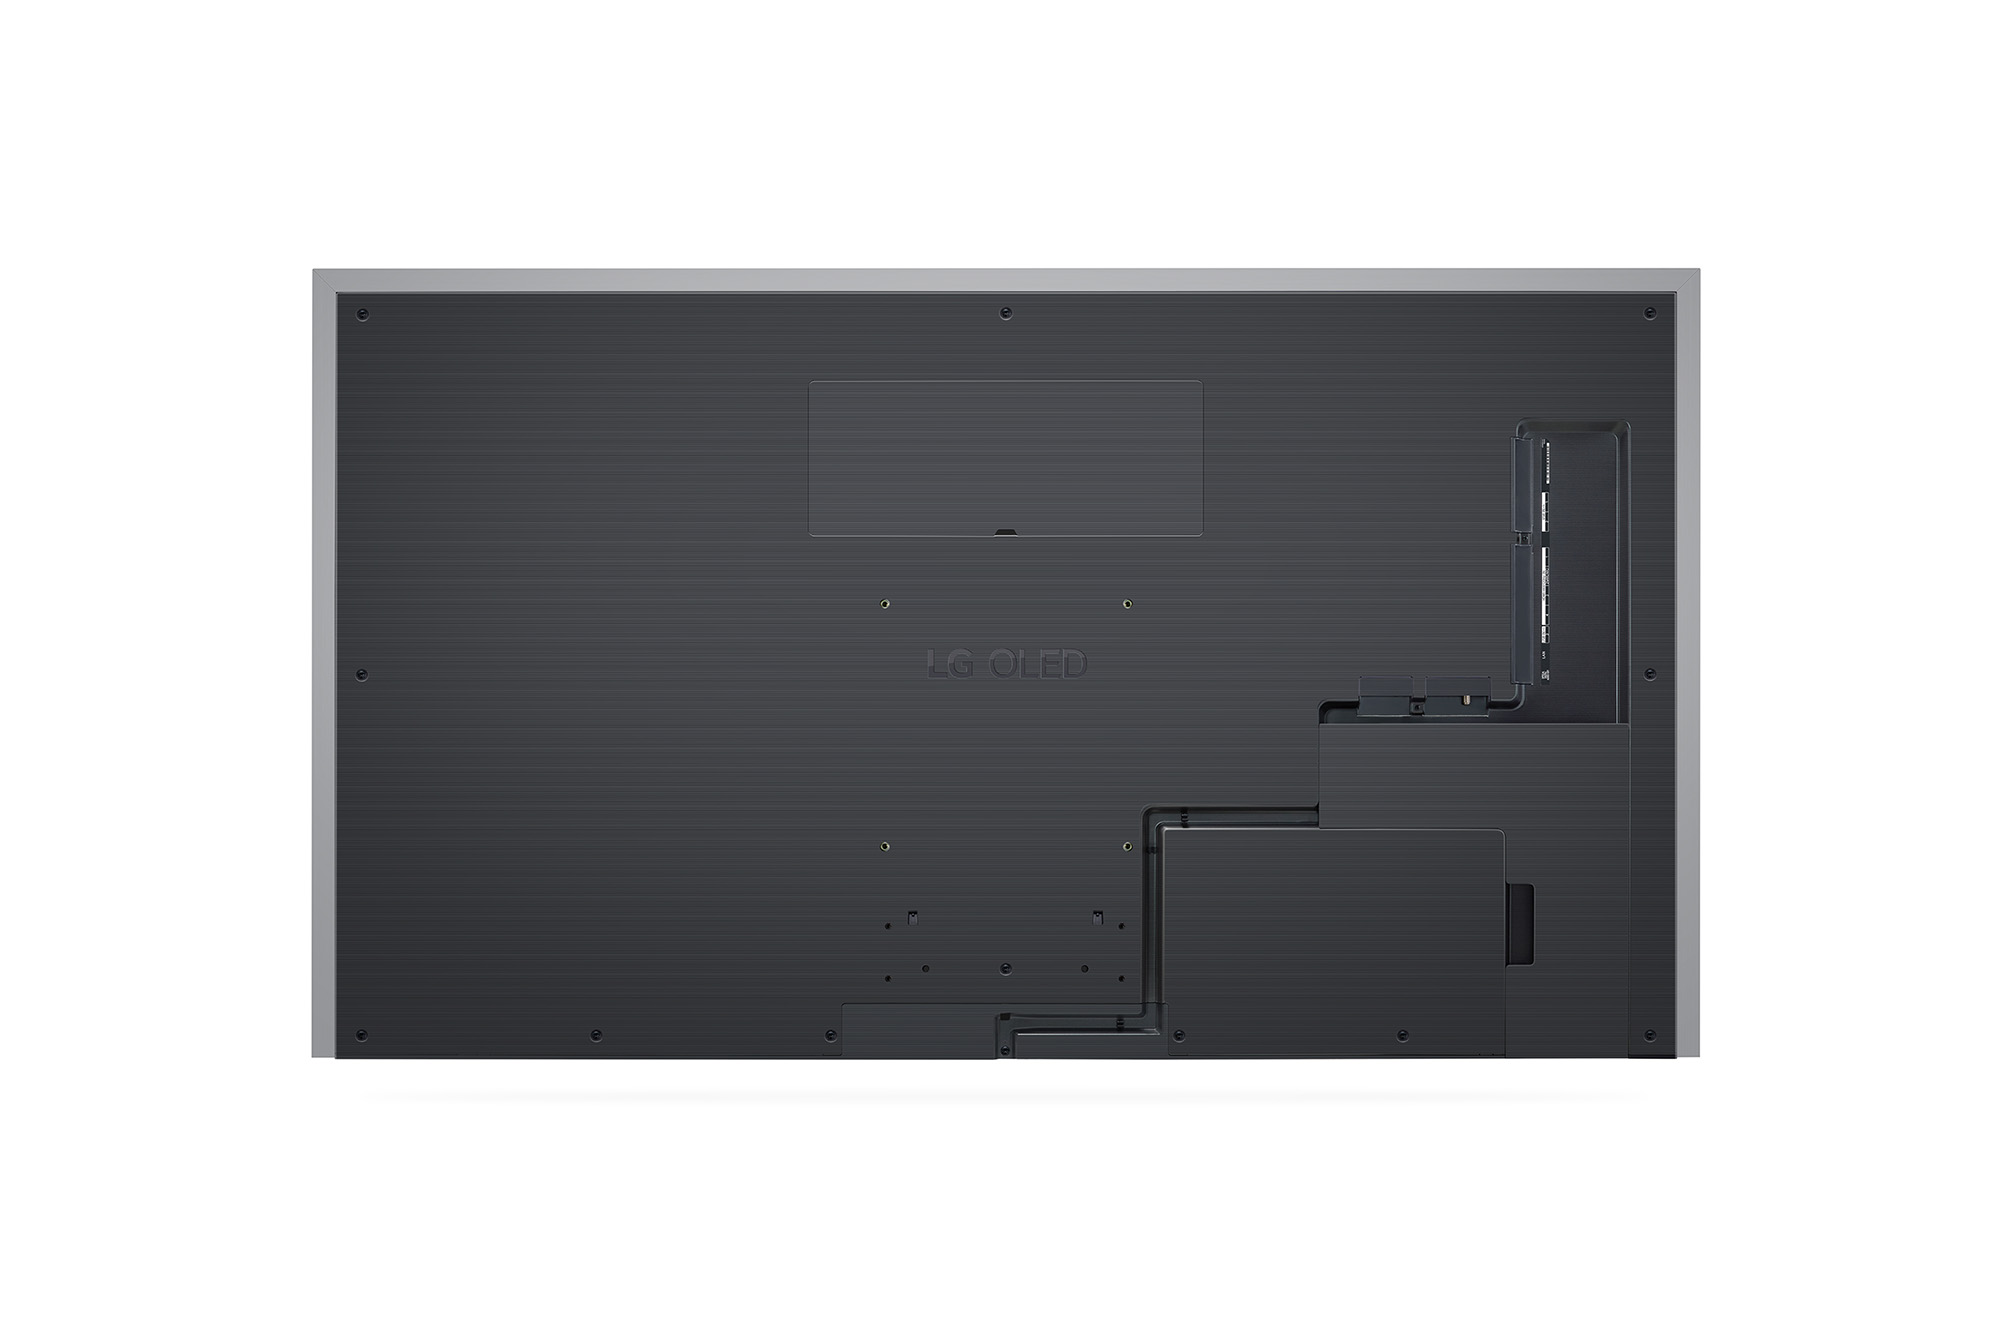 מסך טלוויזיה בטכנולוגיית LG OLED evo Gallery Edition - בגודל 77 אינץ' חכמה ברזולוציית 4K דגם: OLED77G36LA - תמונה 2